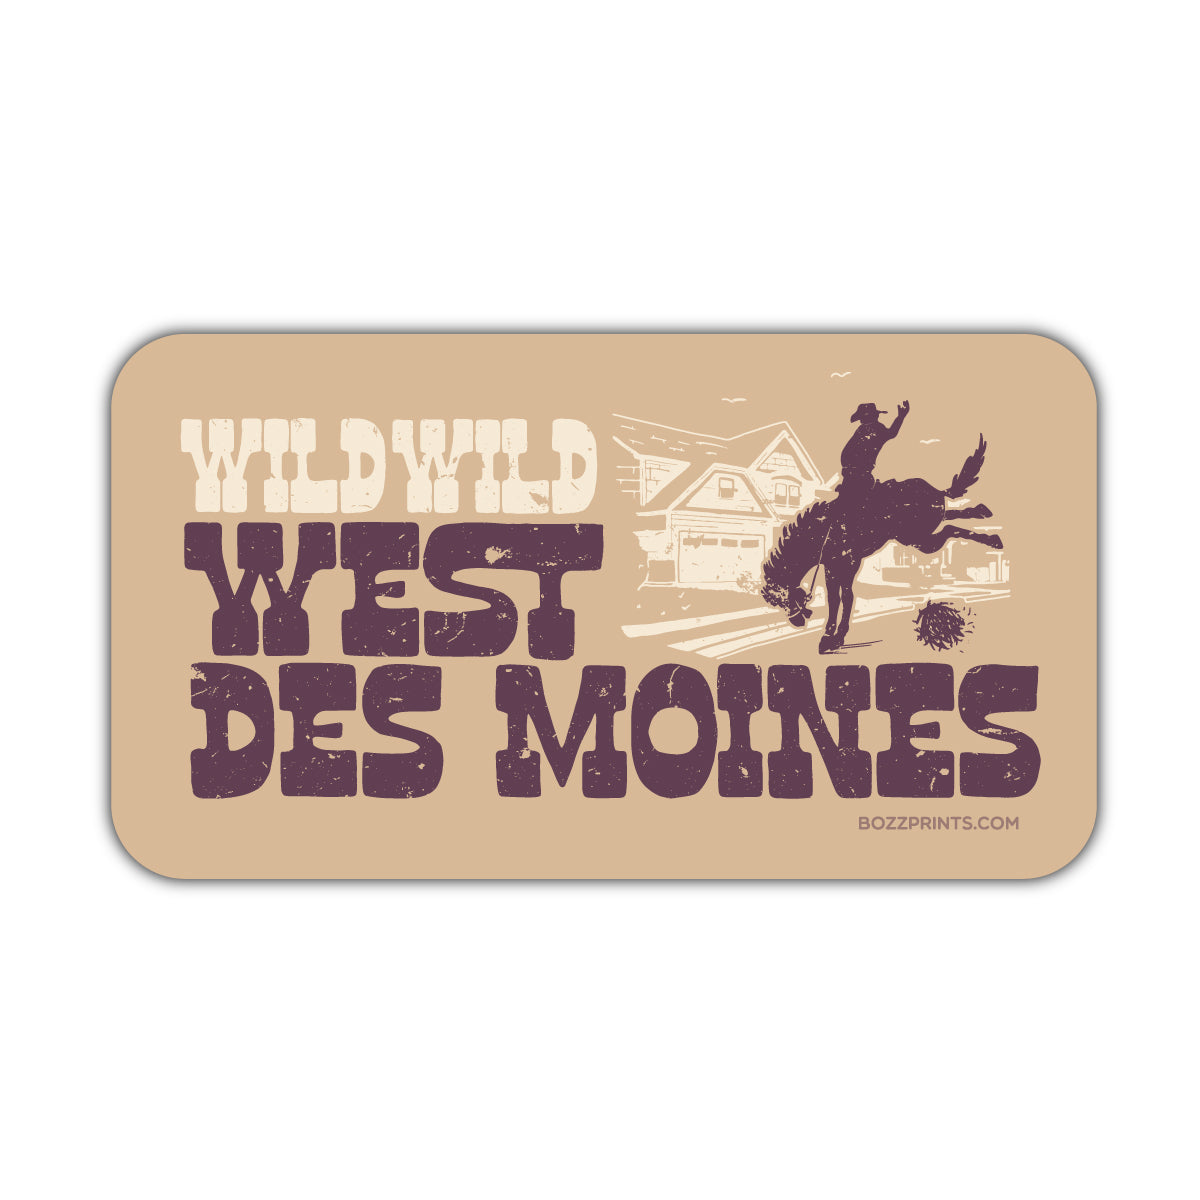 Wild Wild West Des Moines